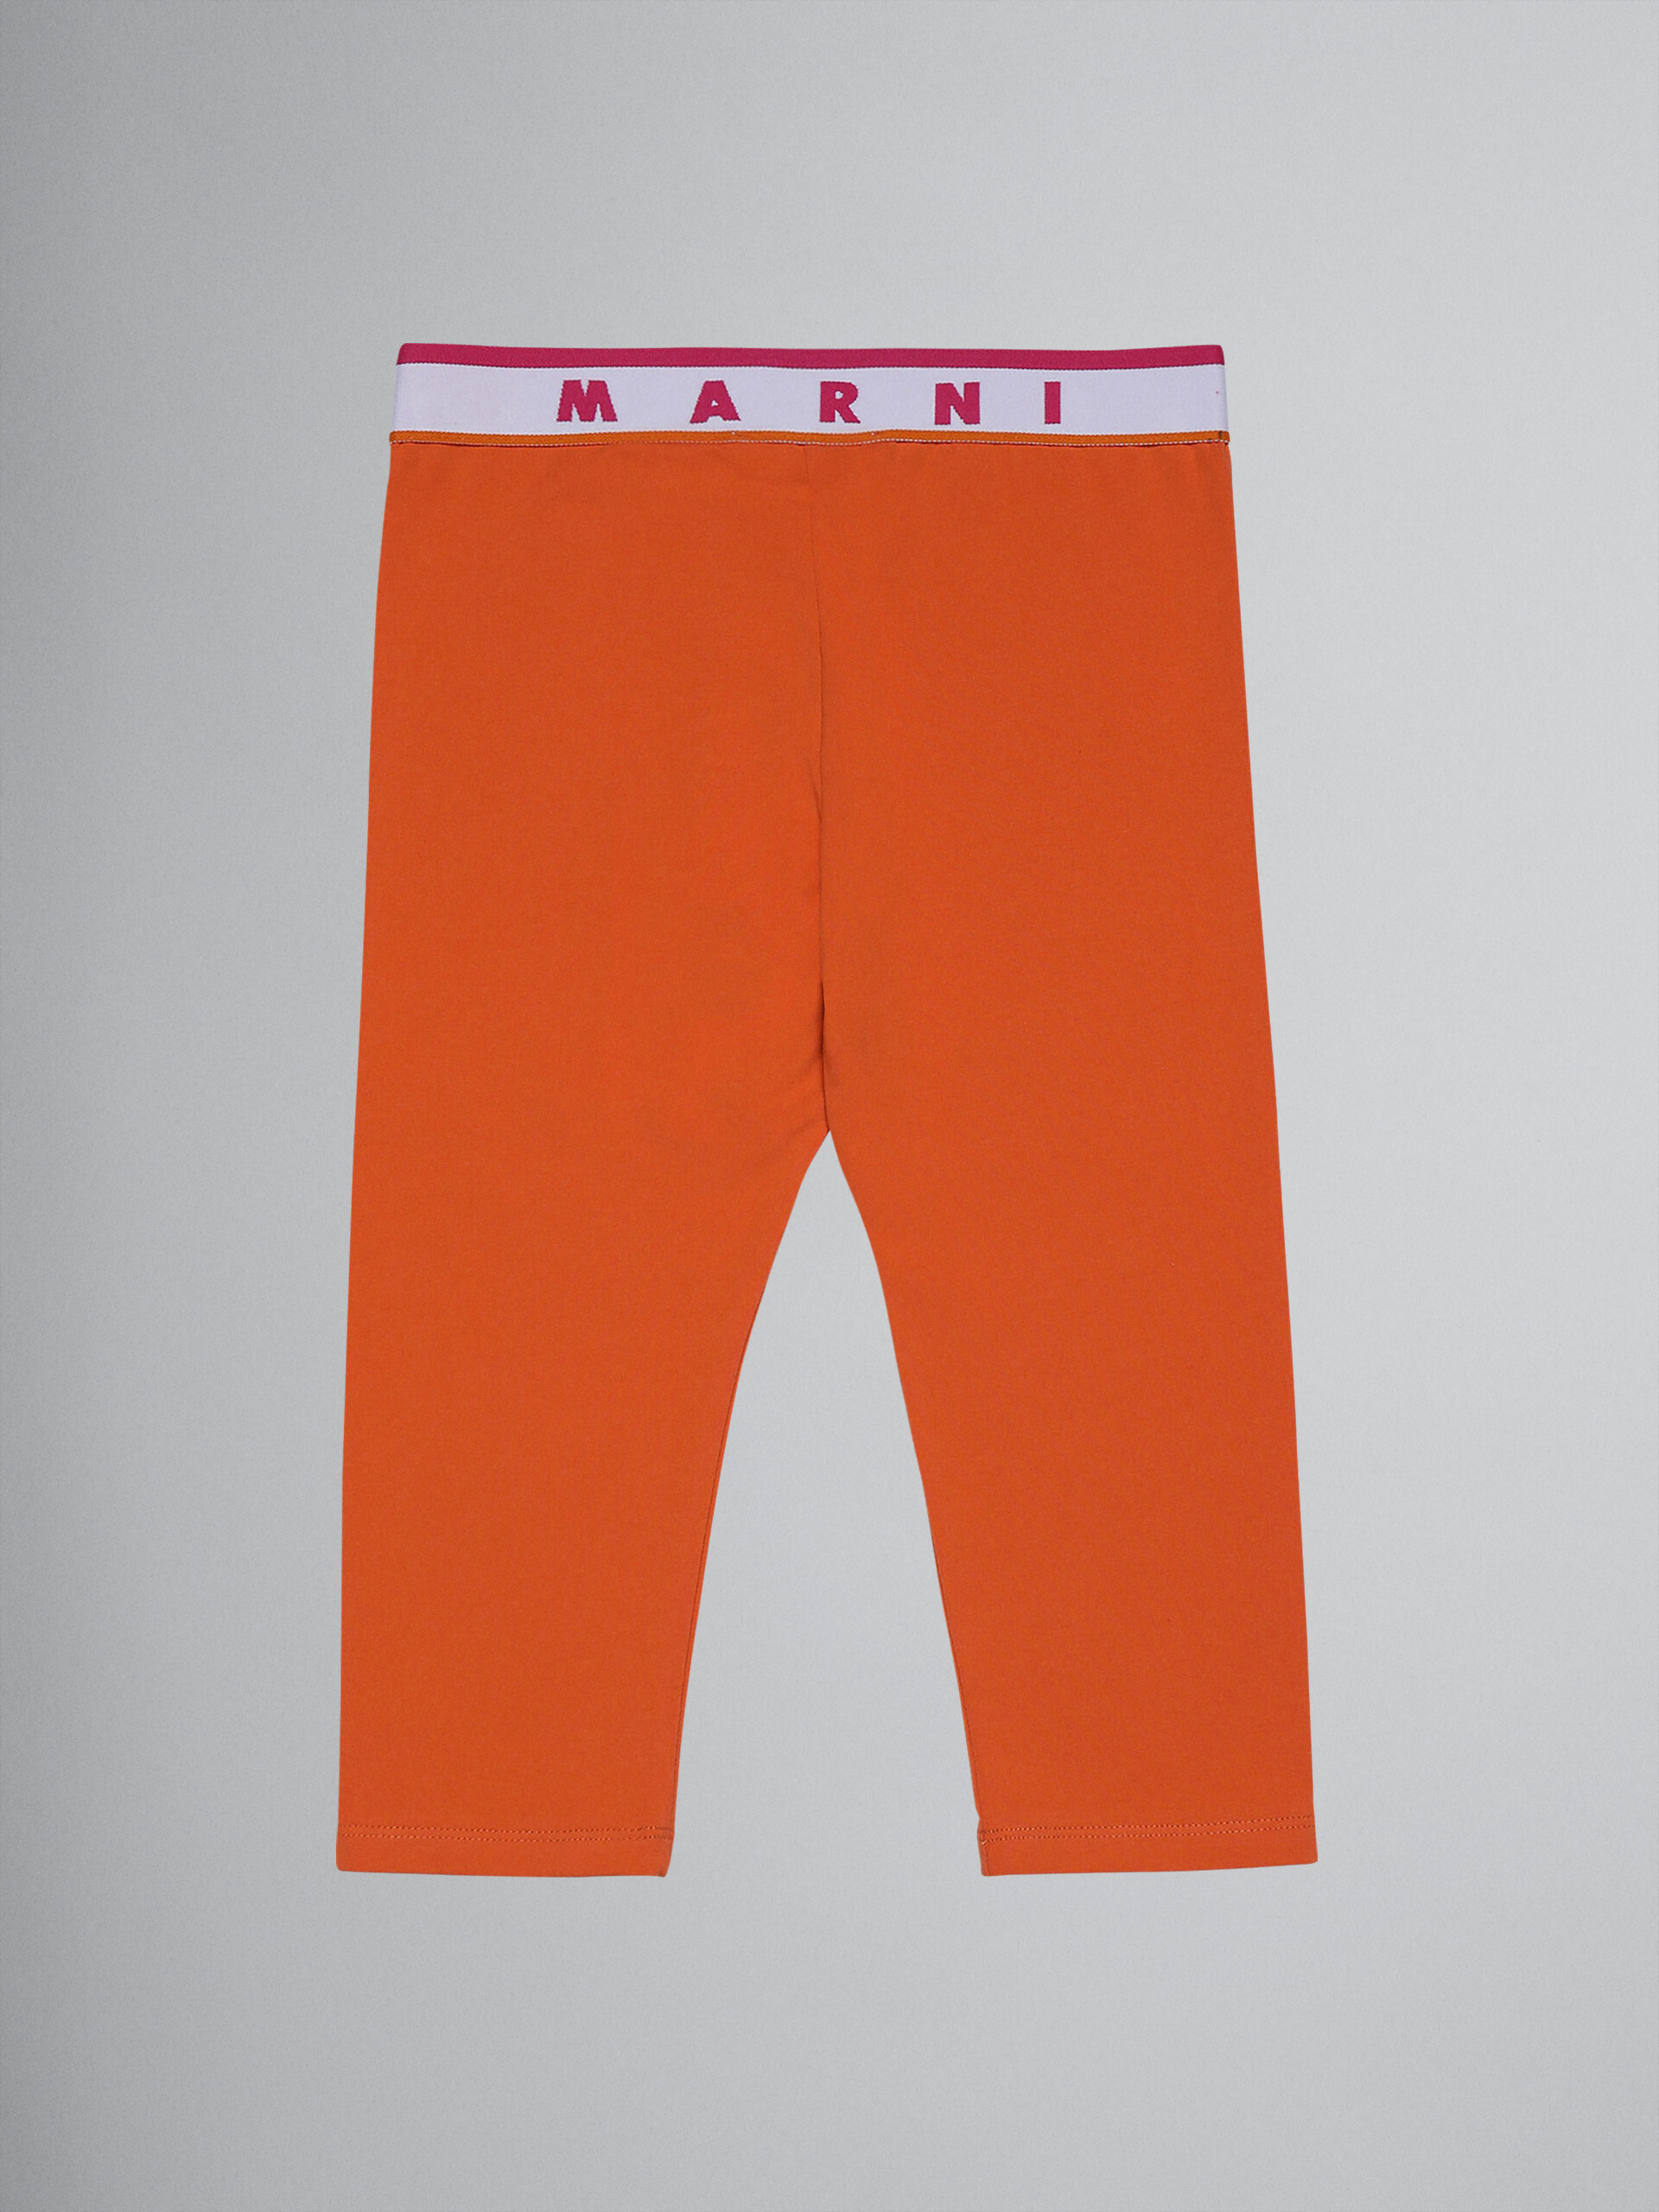 Leggings al ginocchio in jersey elasticizzato arancio con logo - Pantaloni - Image 2